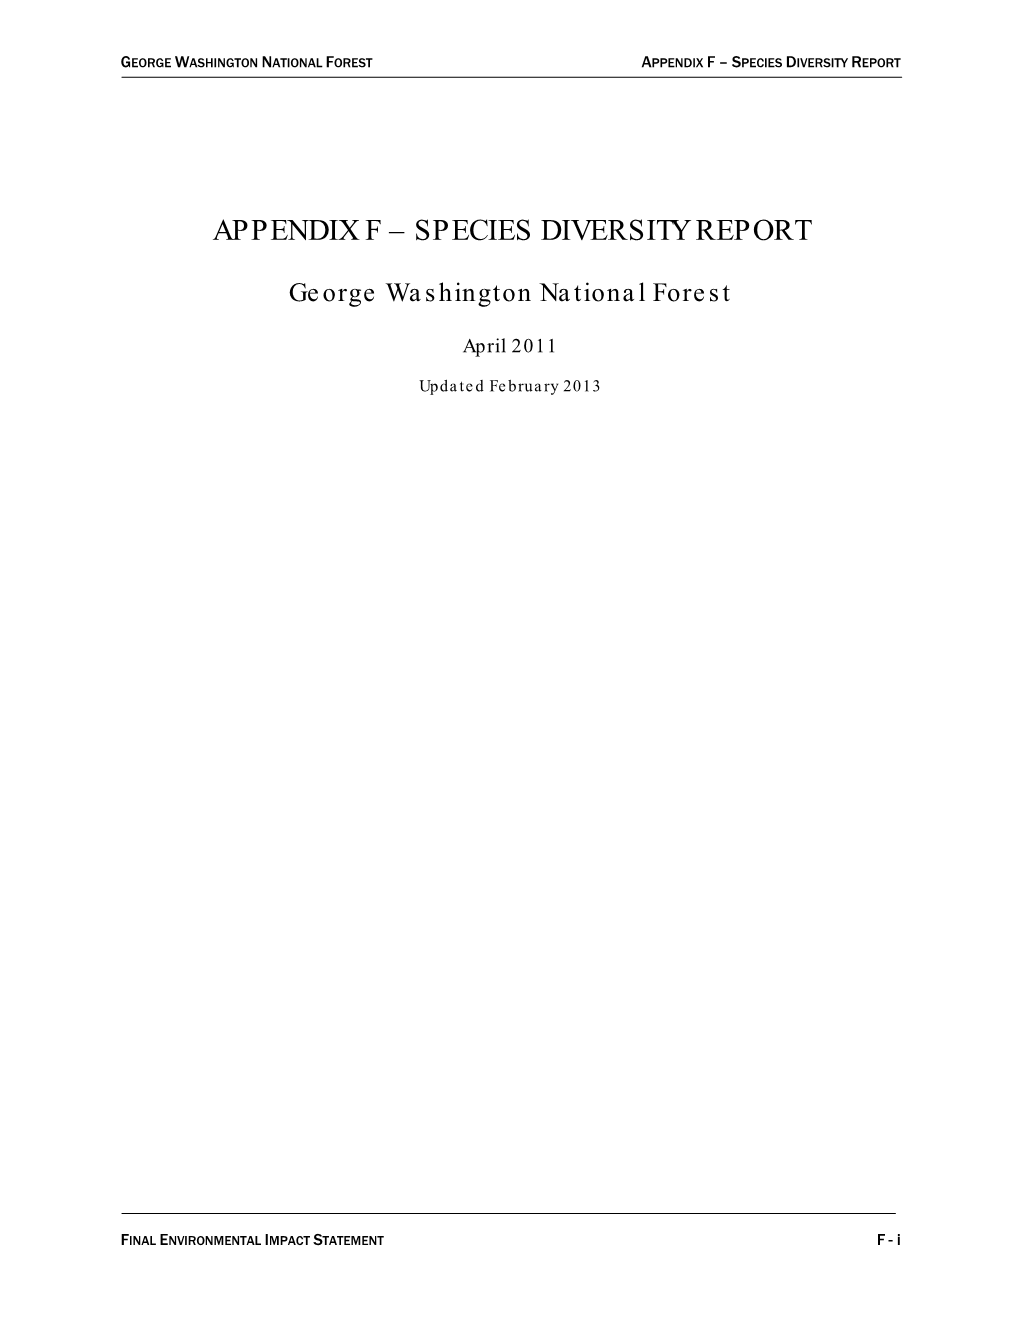 Species Diversity Report